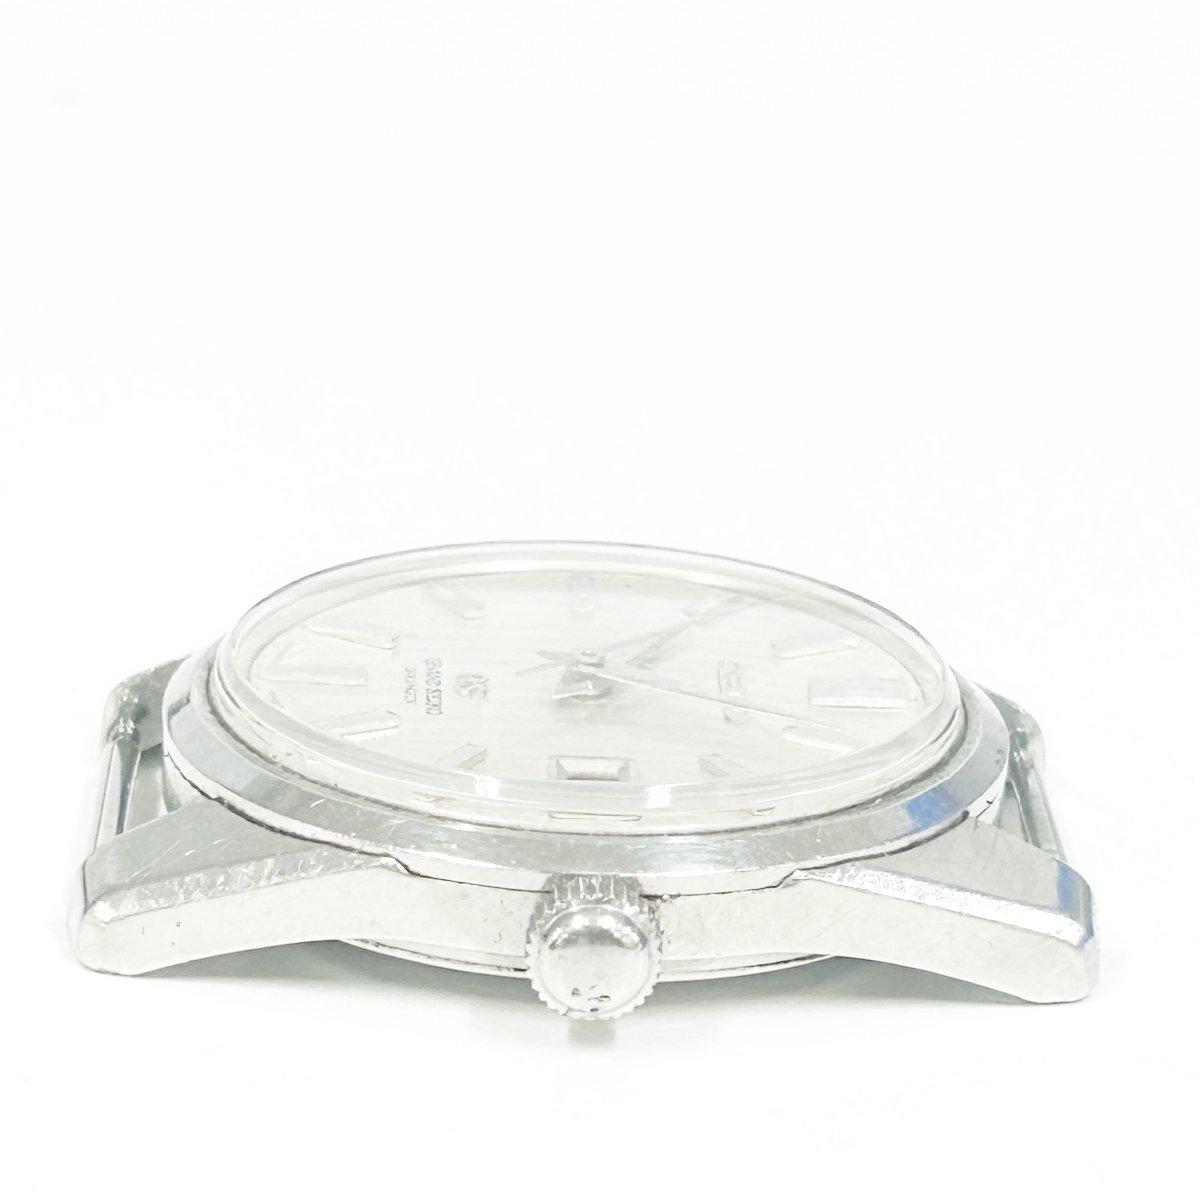 【1円スタート】SEIKO セイコー 5722-9991 グランドセイコー SS シルバー文字盤 手巻き メンズ腕時計 259027の画像2